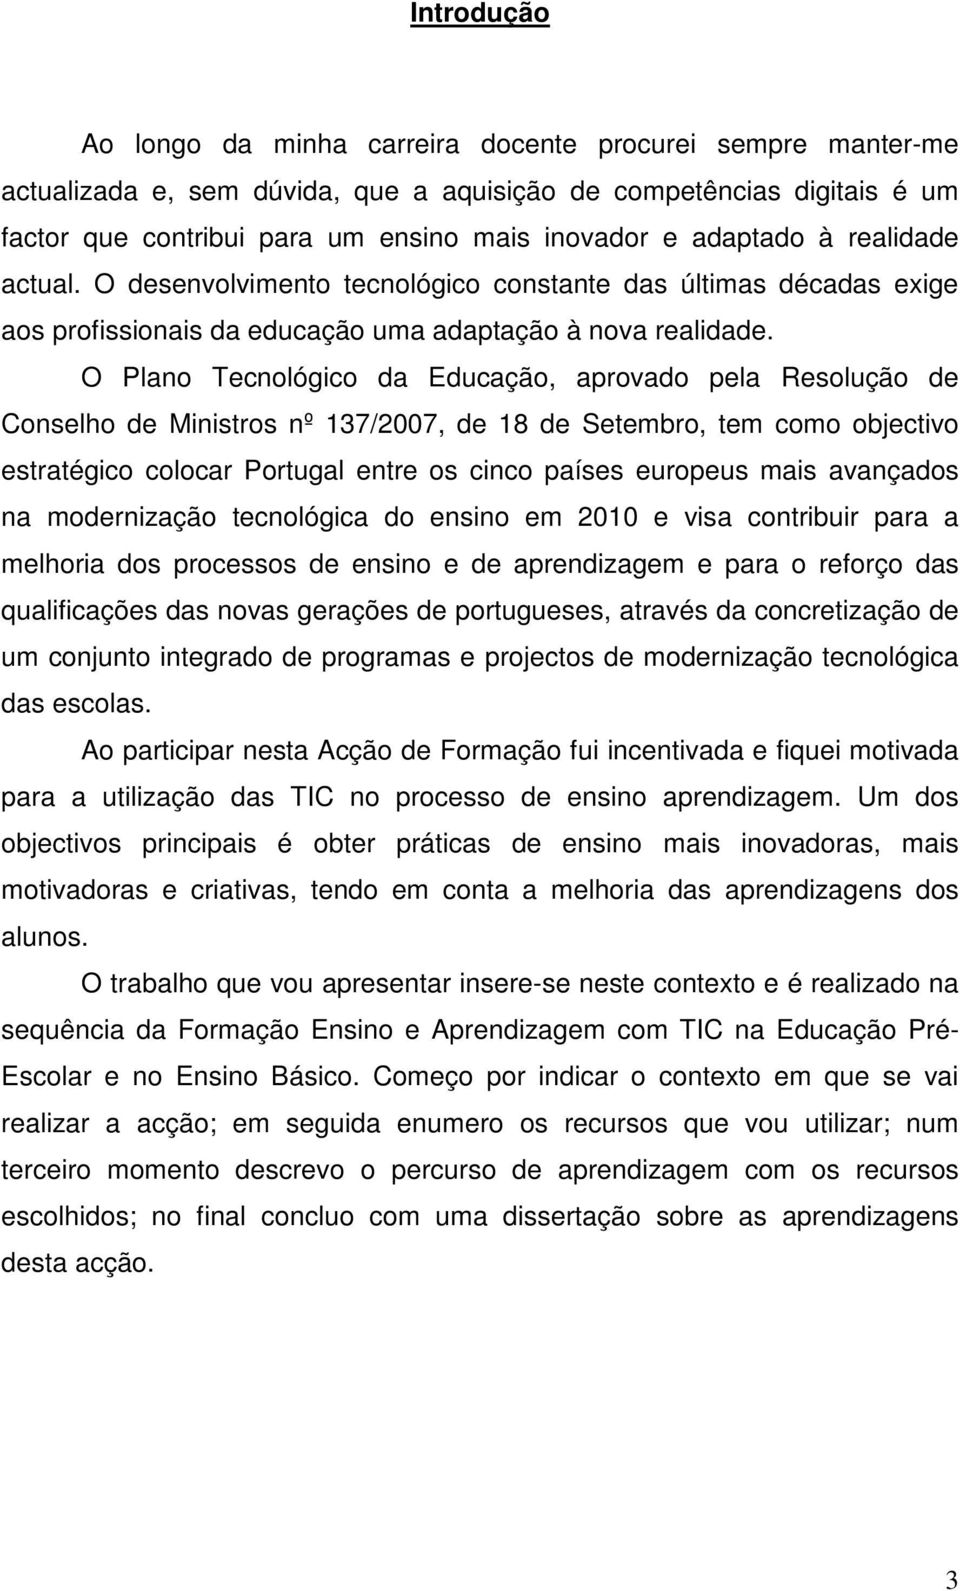 O Plano Tecnológico da Educação, aprovado pela Resolução de Conselho de Ministros nº 137/2007, de 18 de Setembro, tem como objectivo estratégico colocar Portugal entre os cinco países europeus mais